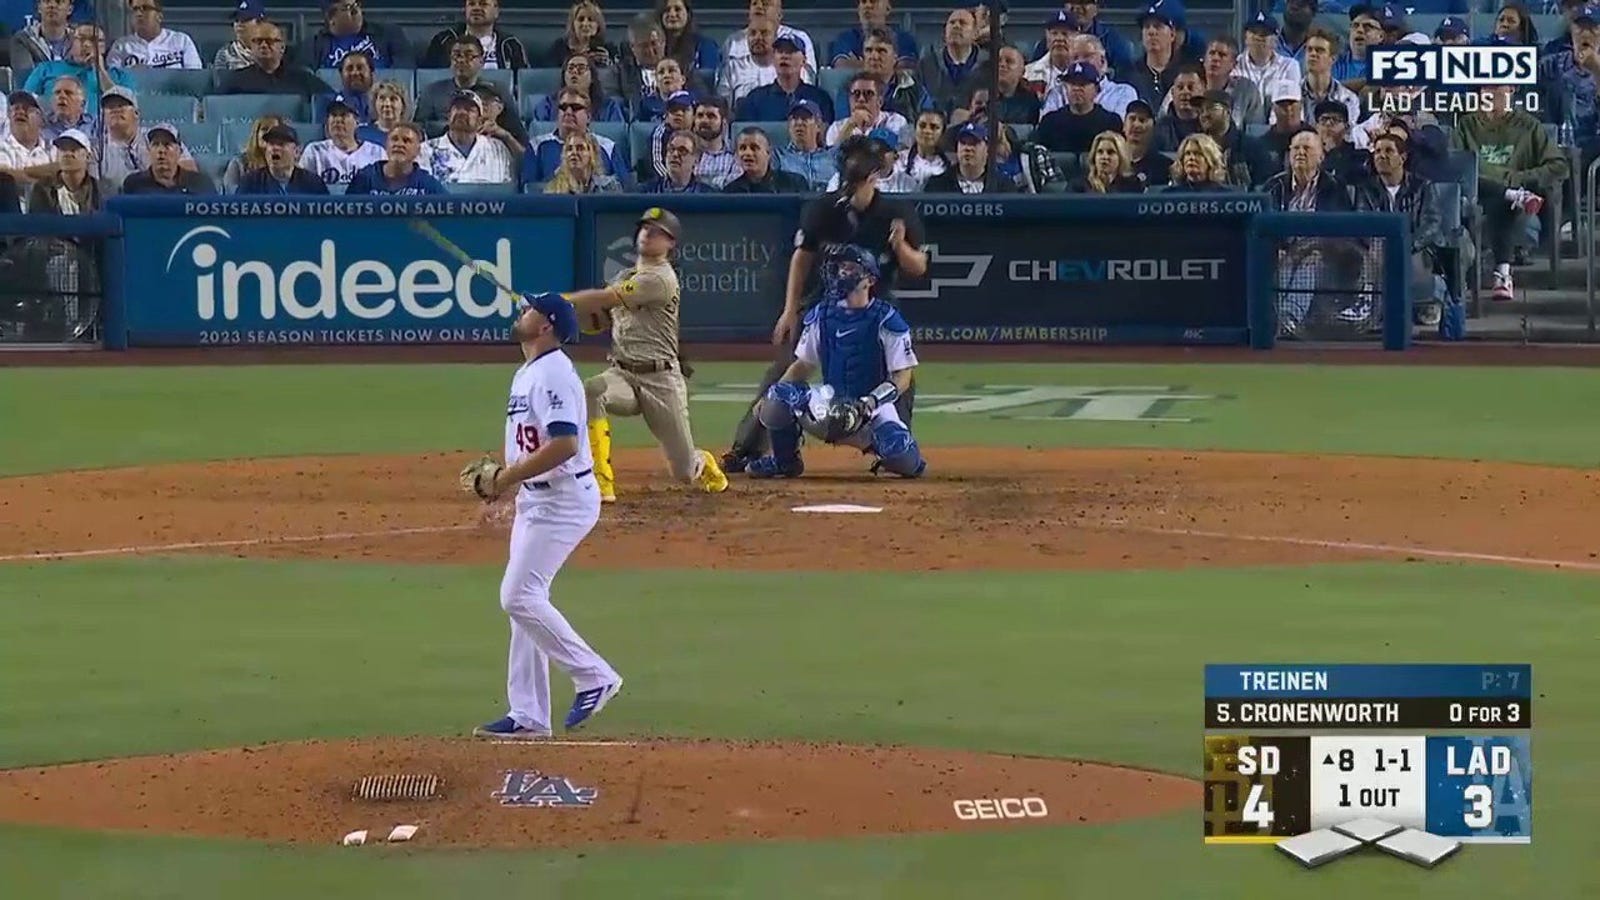 Jake Kronworth de los Padres impulsa un ataque en casa hacia lo profundo del jardín derecho para extender la ventaja sobre los Dodgers.